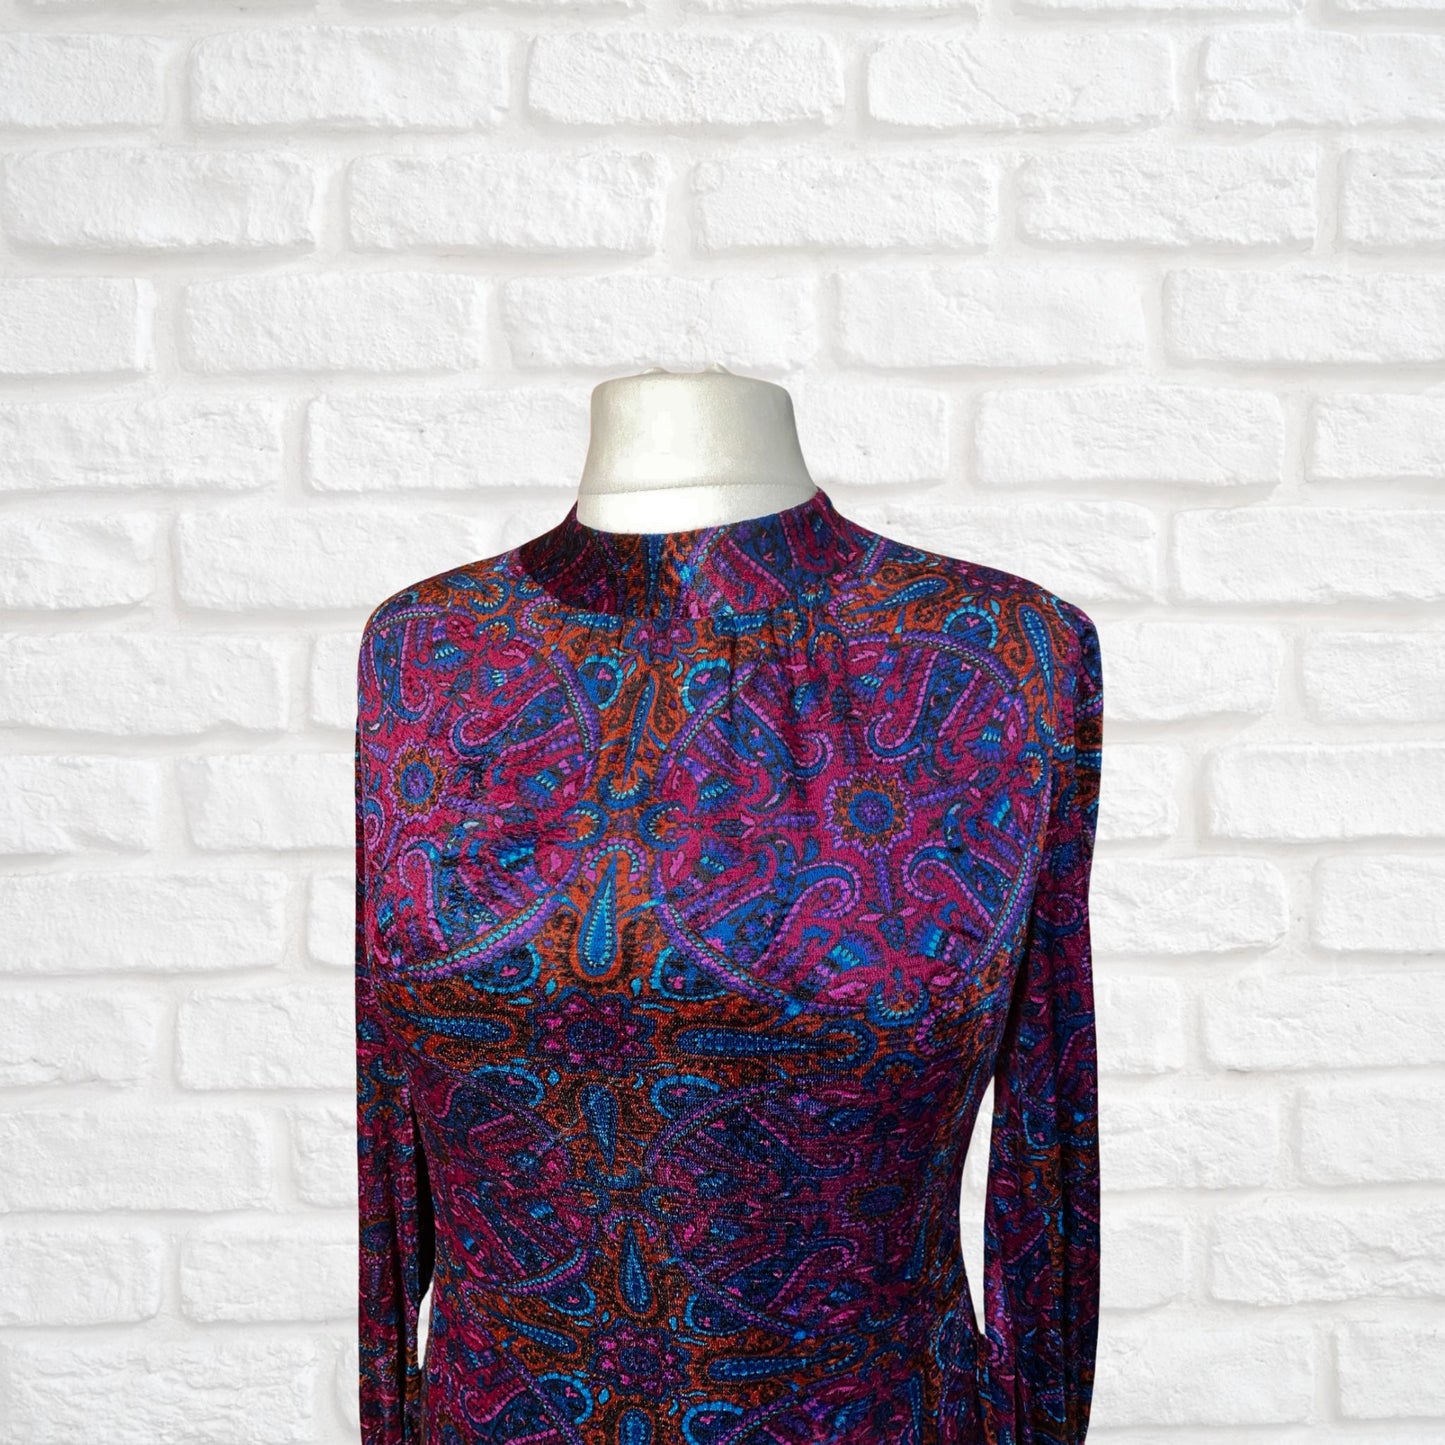 Vintage Velvet Purple Paisley 60s Style A line Dress. Approx UK size 14-16